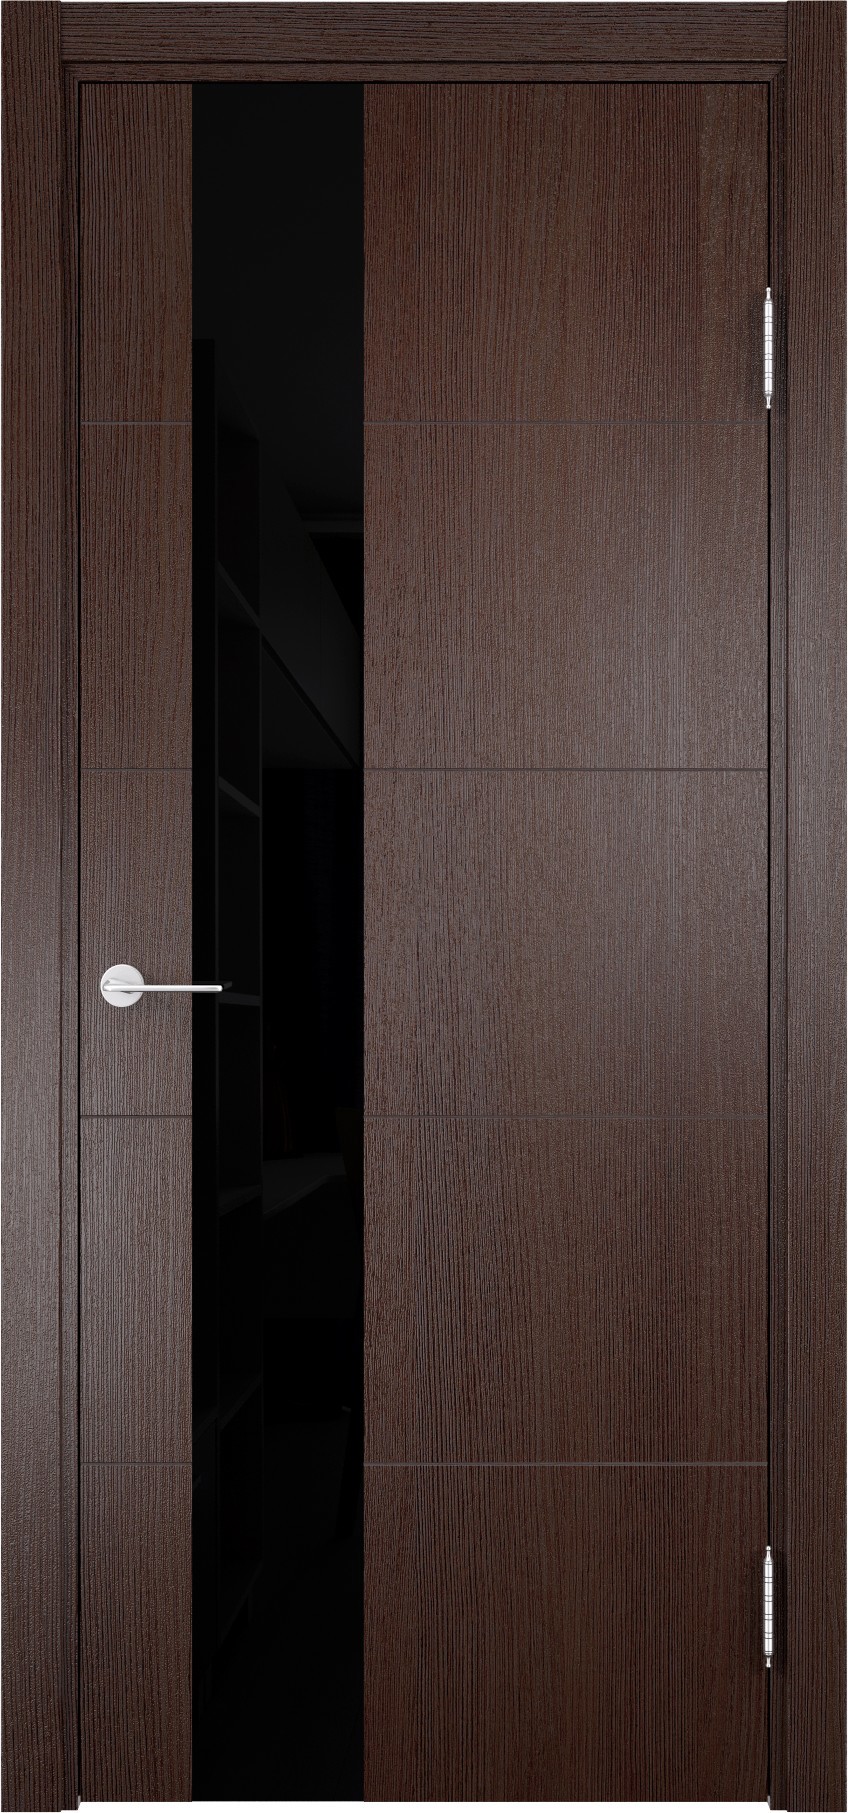 93718176 Дверь межкомнатная Турин (13) остекленная полипропилен цвет дуб графит вералинга 200 x 60 см STLM-0554450 CASAPORTE